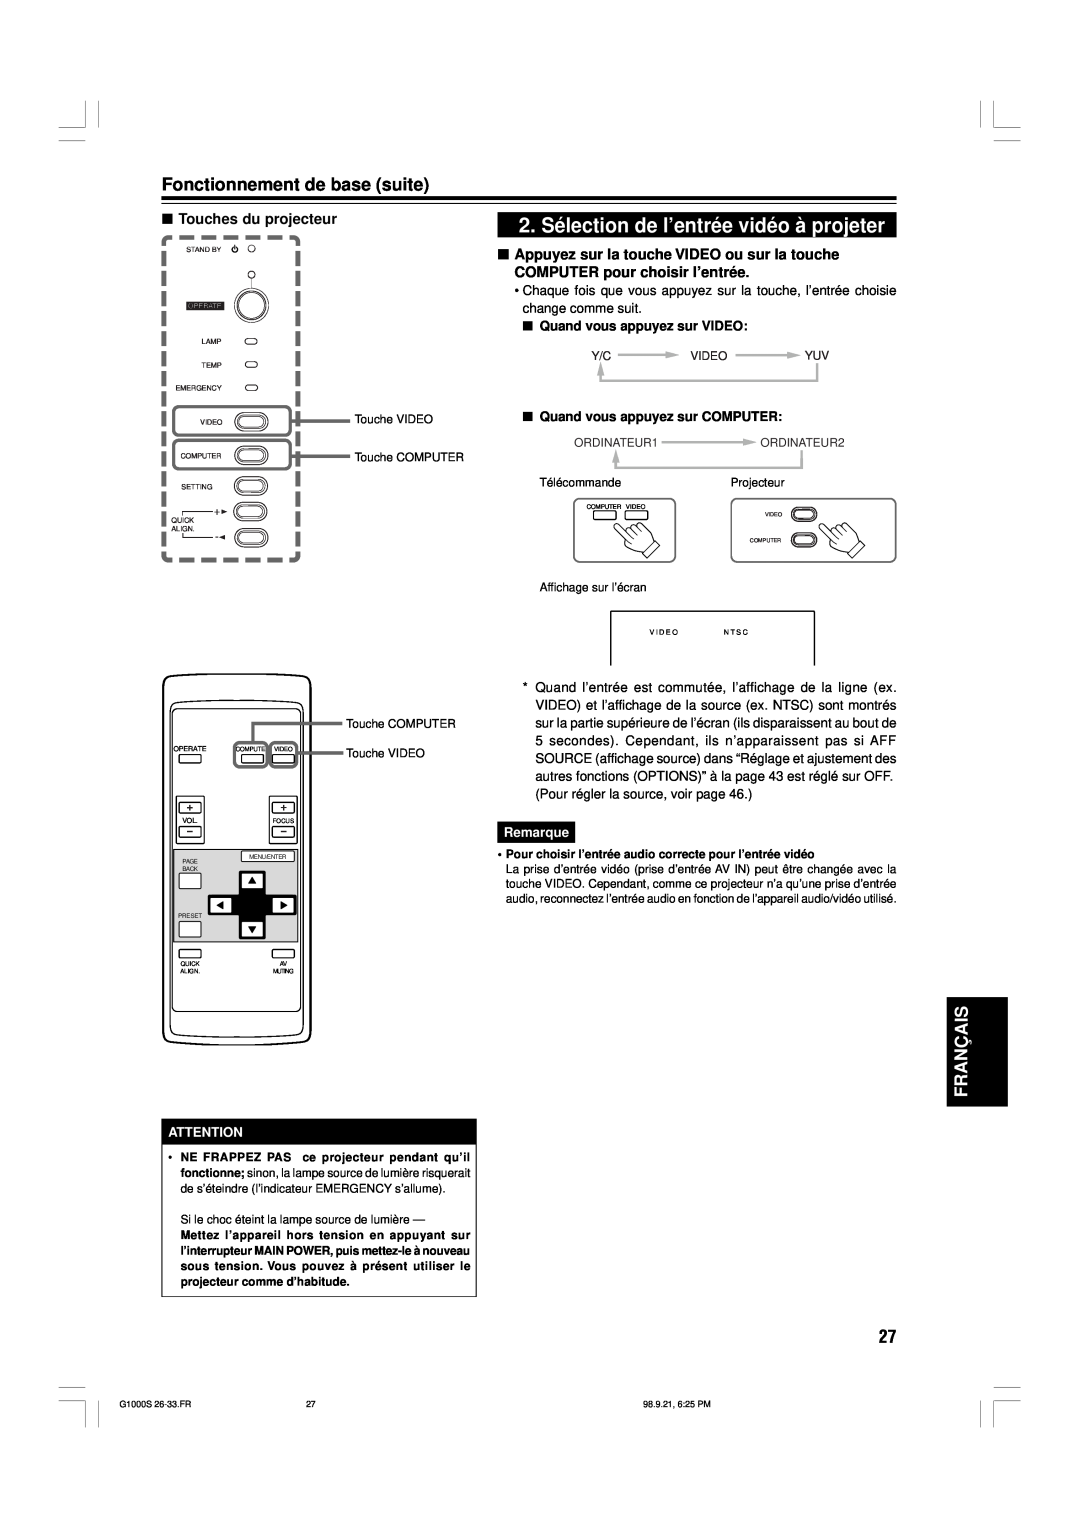 JVC G1000S manual 2. Sélection de l’entrée vidéo à projeter, Fonctionnement de base suite, Français, Touches du projecteur 